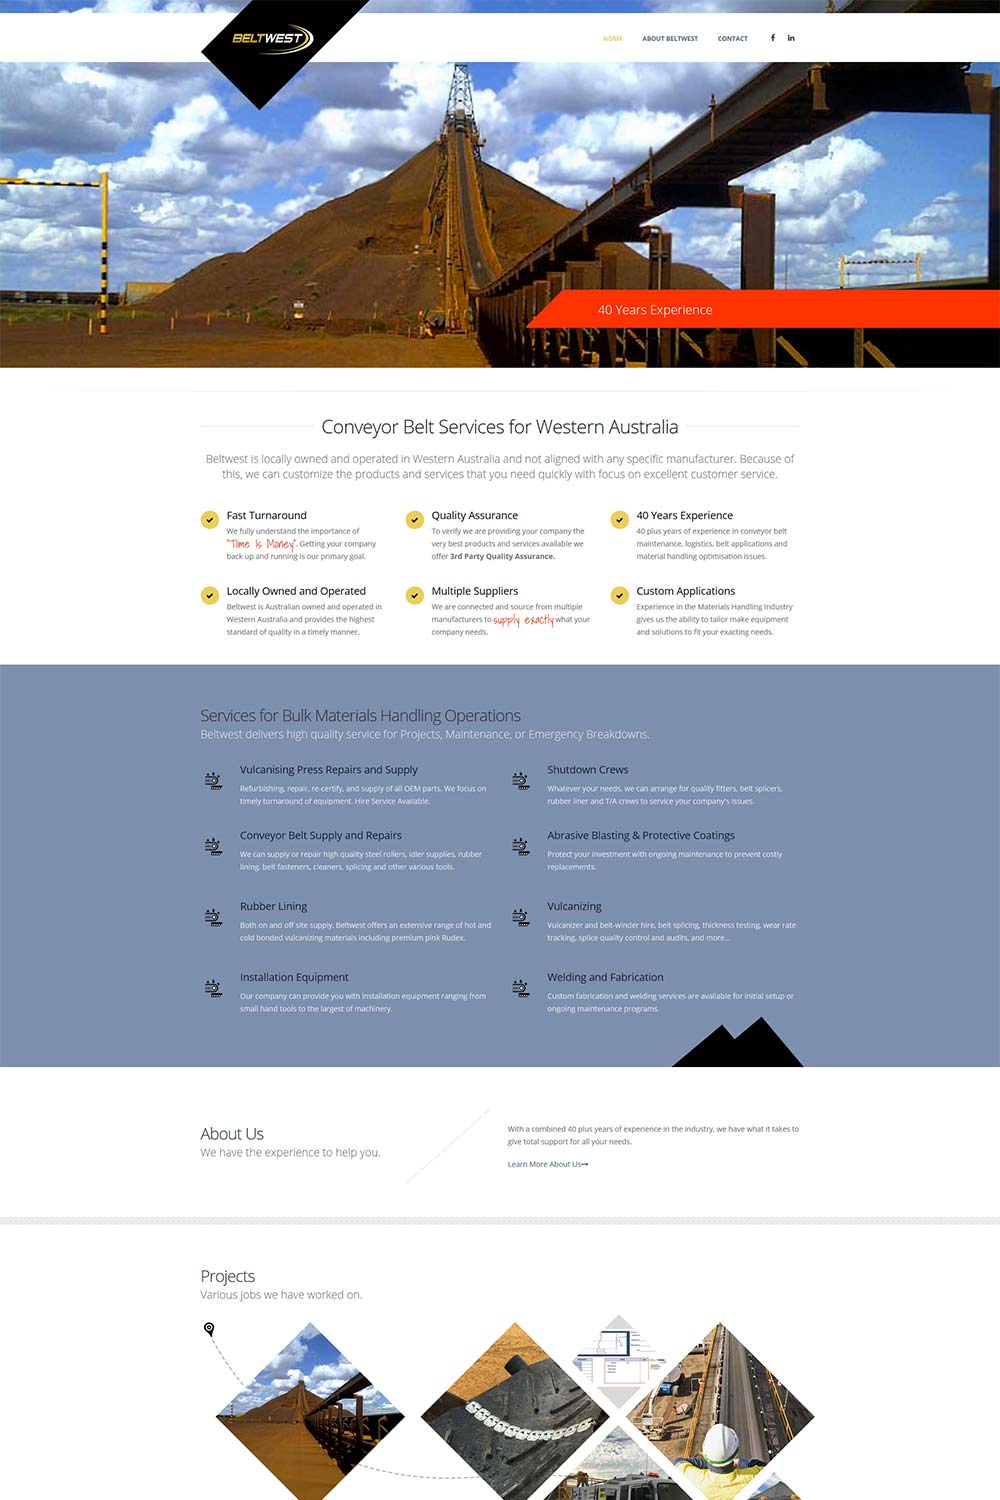 Our bronze web design package screenshot from a local Mandurah business.